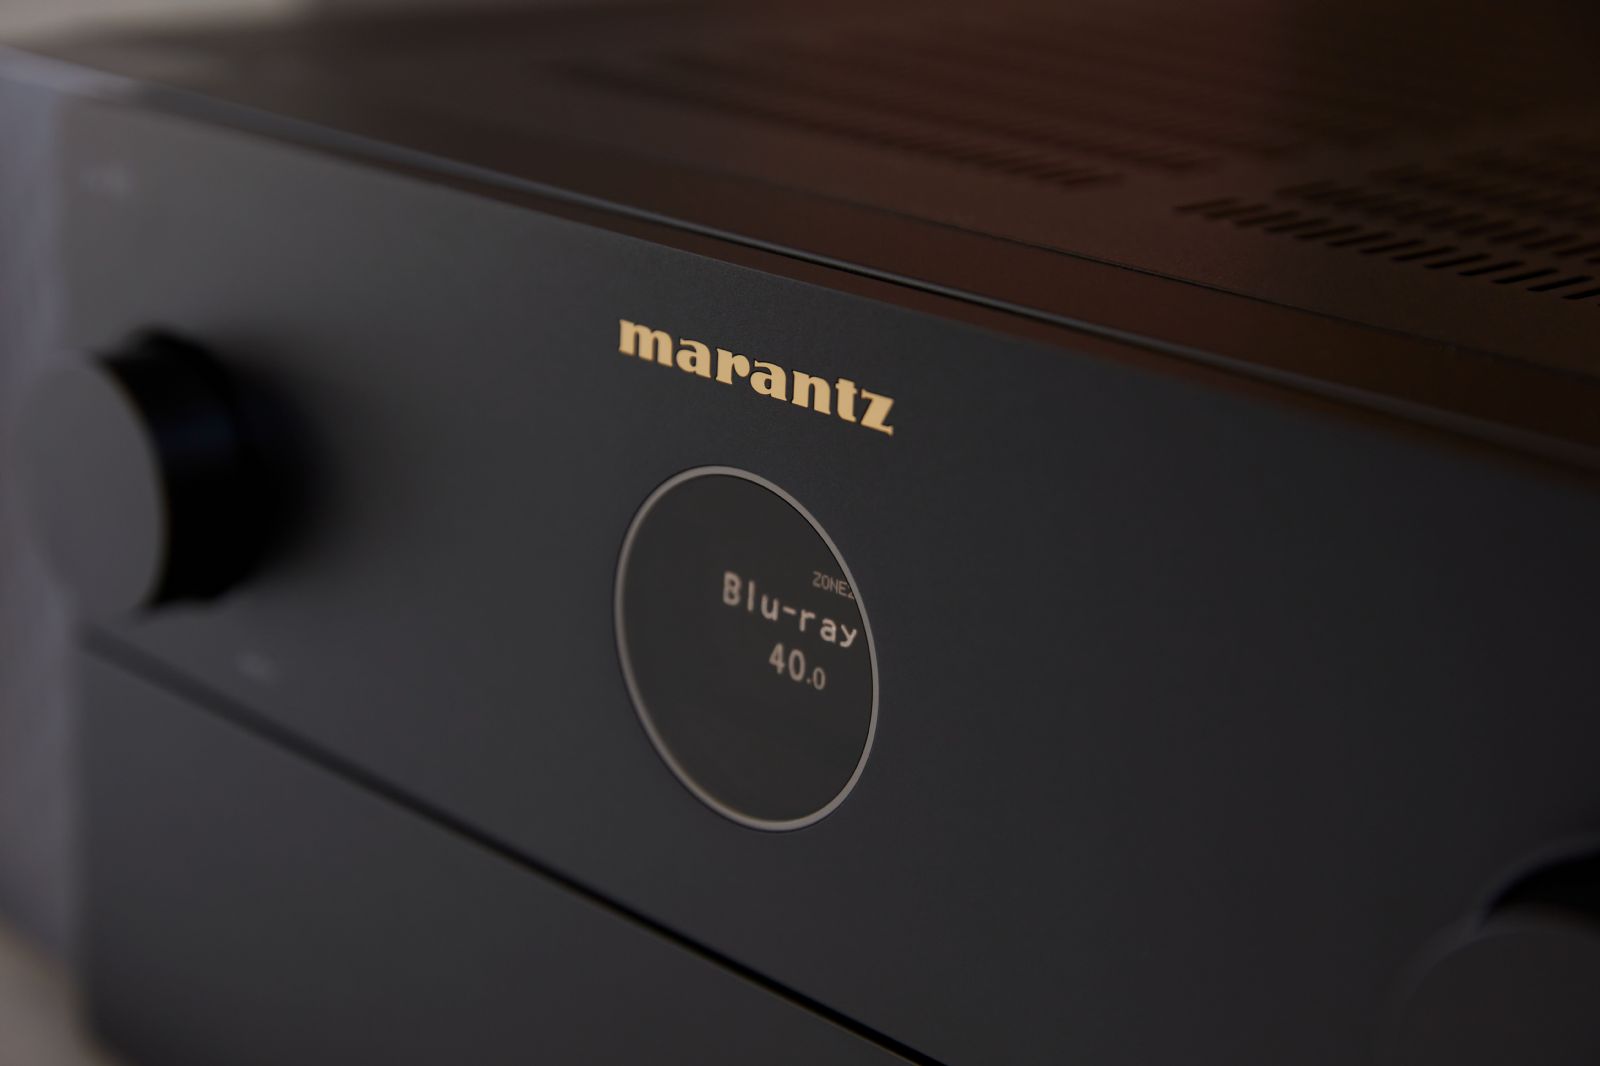 Förstärkare Marantz Cinema 40 9.4-kanals A/V-receiver